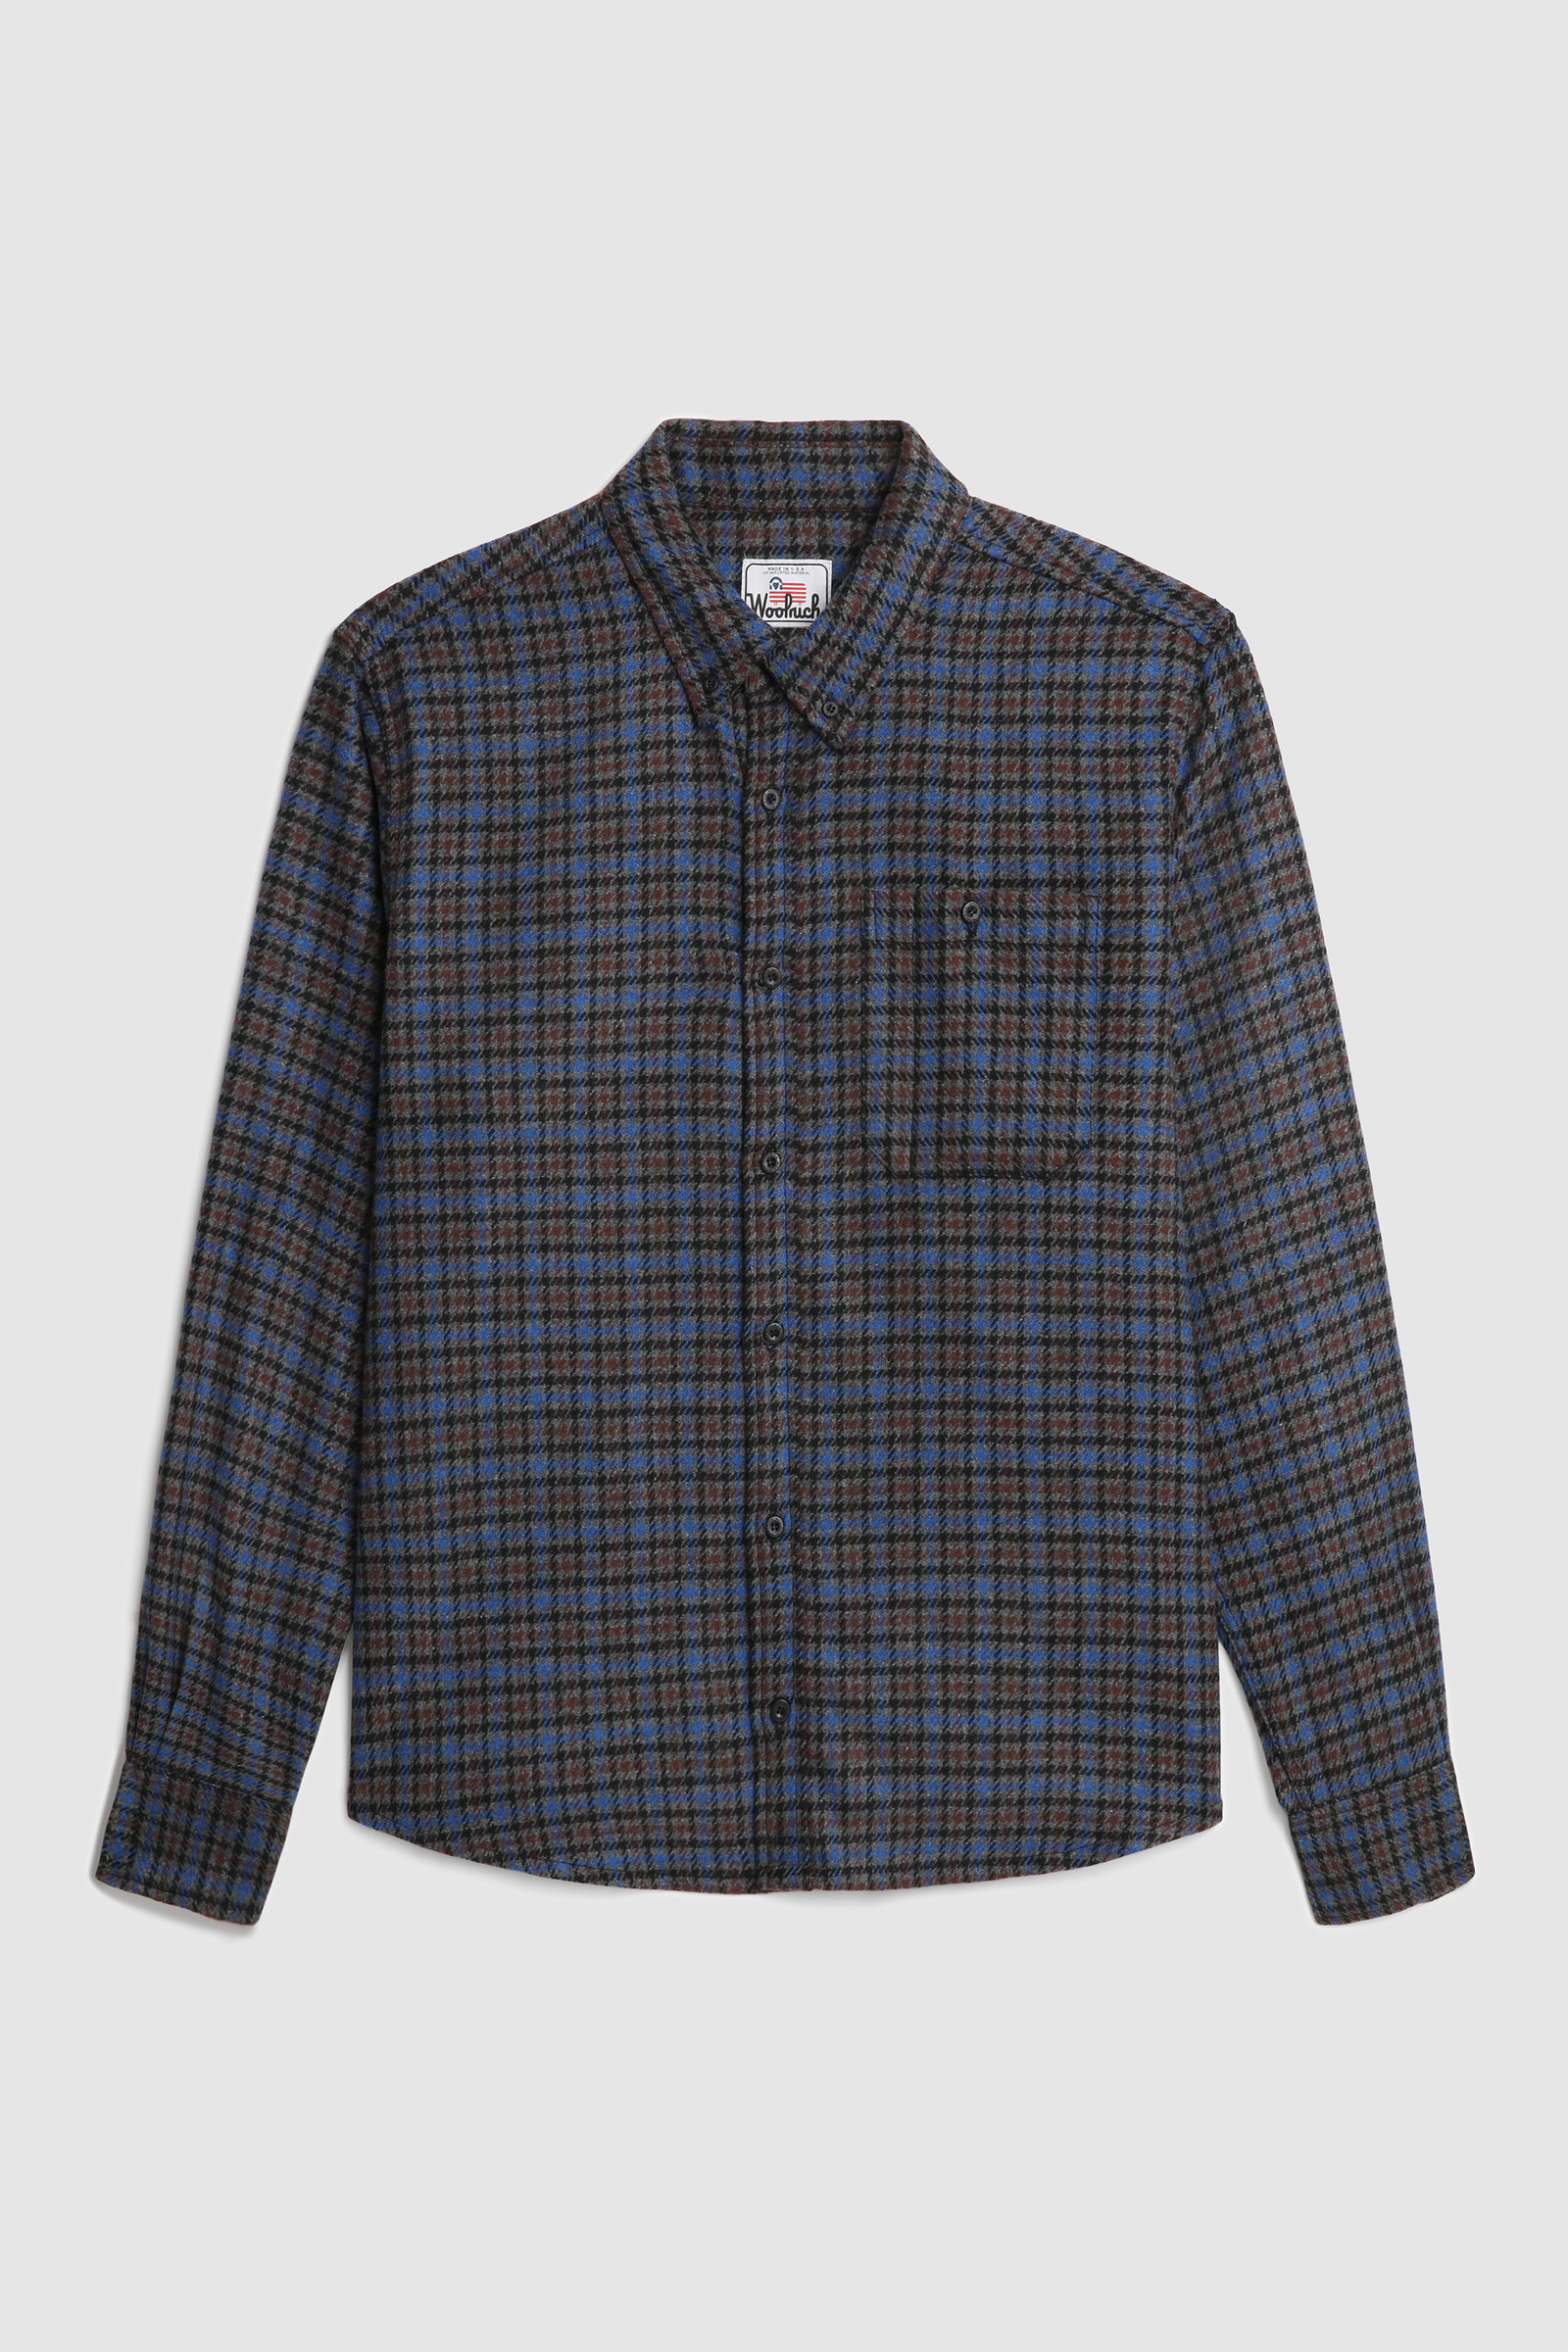 Men's Wool Blend Trout Run Plaid Flannel Shirt Grey | Woolrich USA